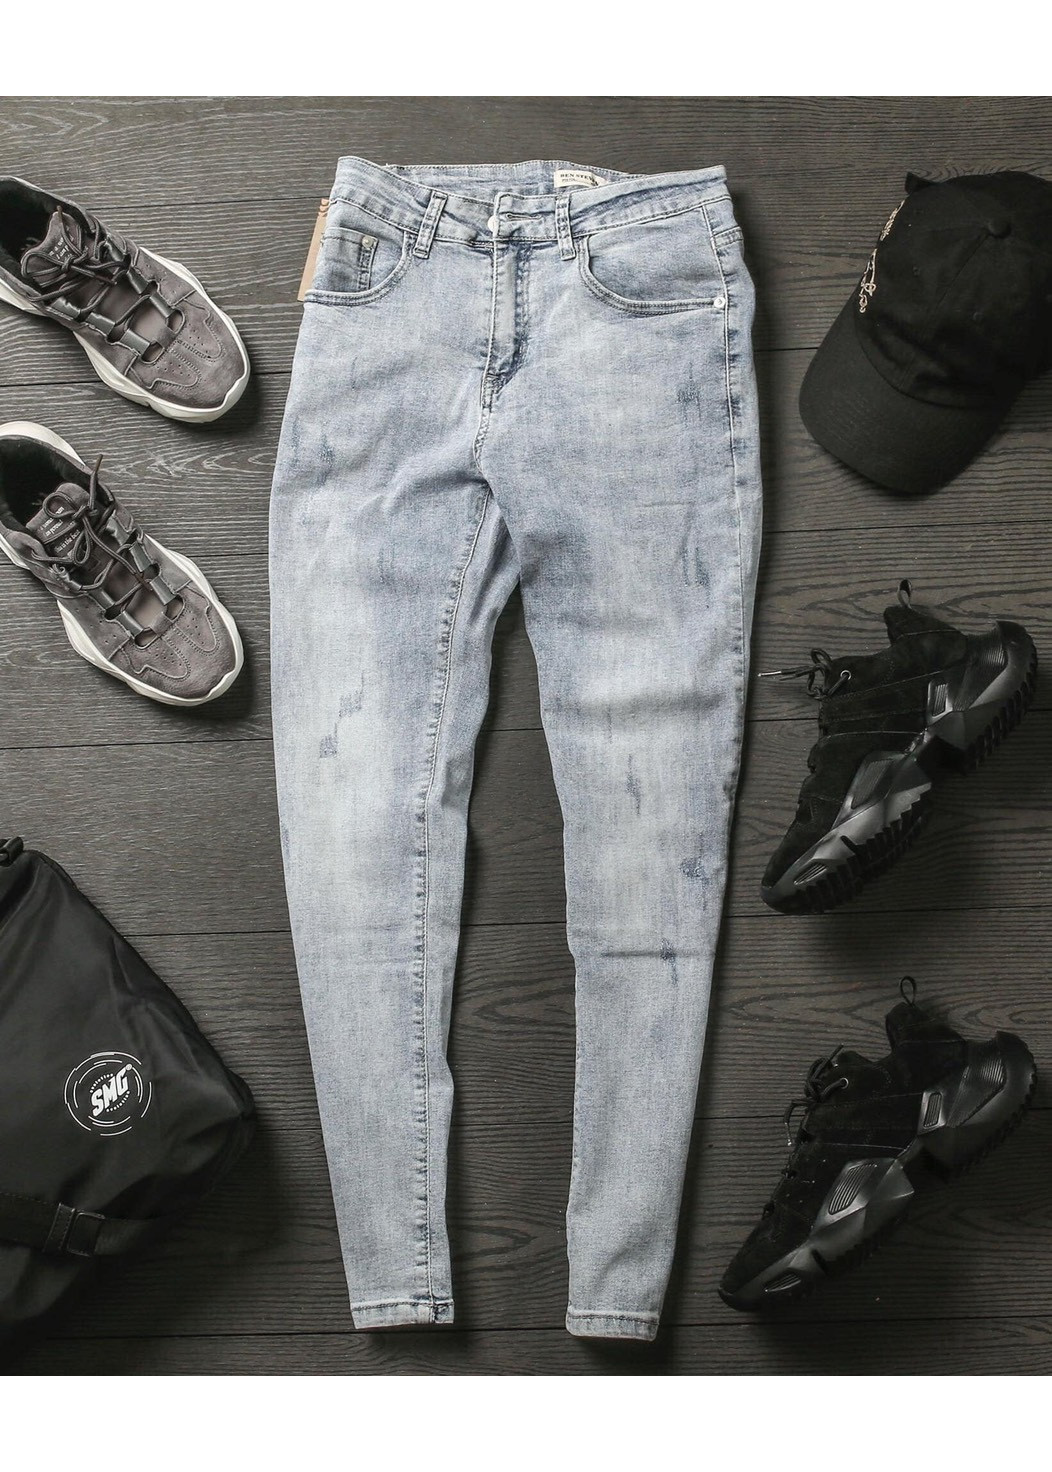 Quần jeans nam co dãn , quần bò nam kiểu trơn và xước thiết kế trẻ trung đơn điệu phá cách gồm 5 kích thước (28-32) Julido mẫu QJN099704 - Màu bạc xước